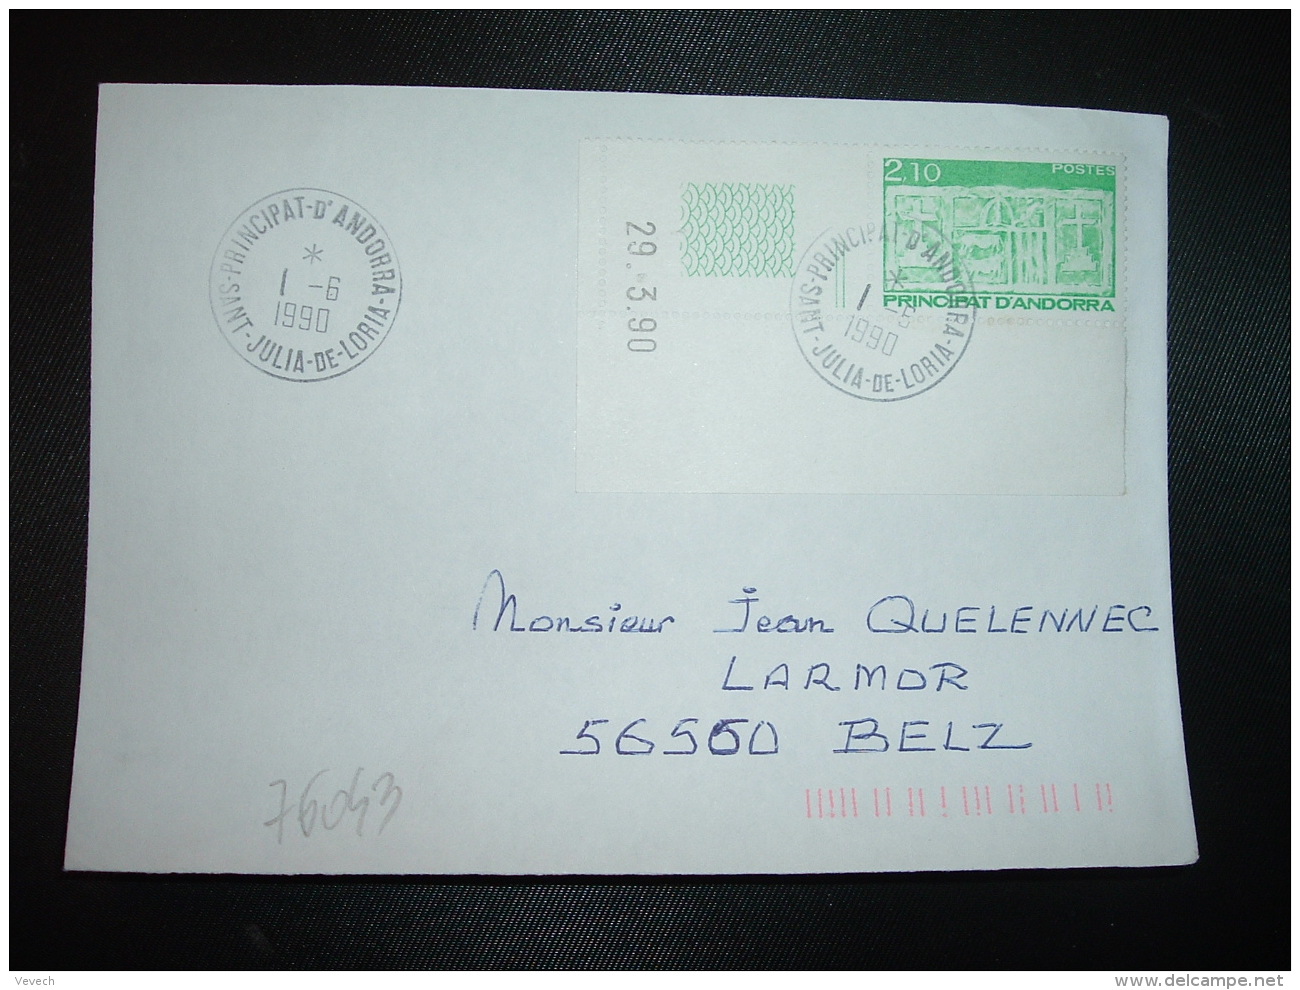 LETTRE TP 2,10 COIN DATE 29.3.90 OBL.1-6 1990 SAINT JULIA DE LORIA - Lettres & Documents